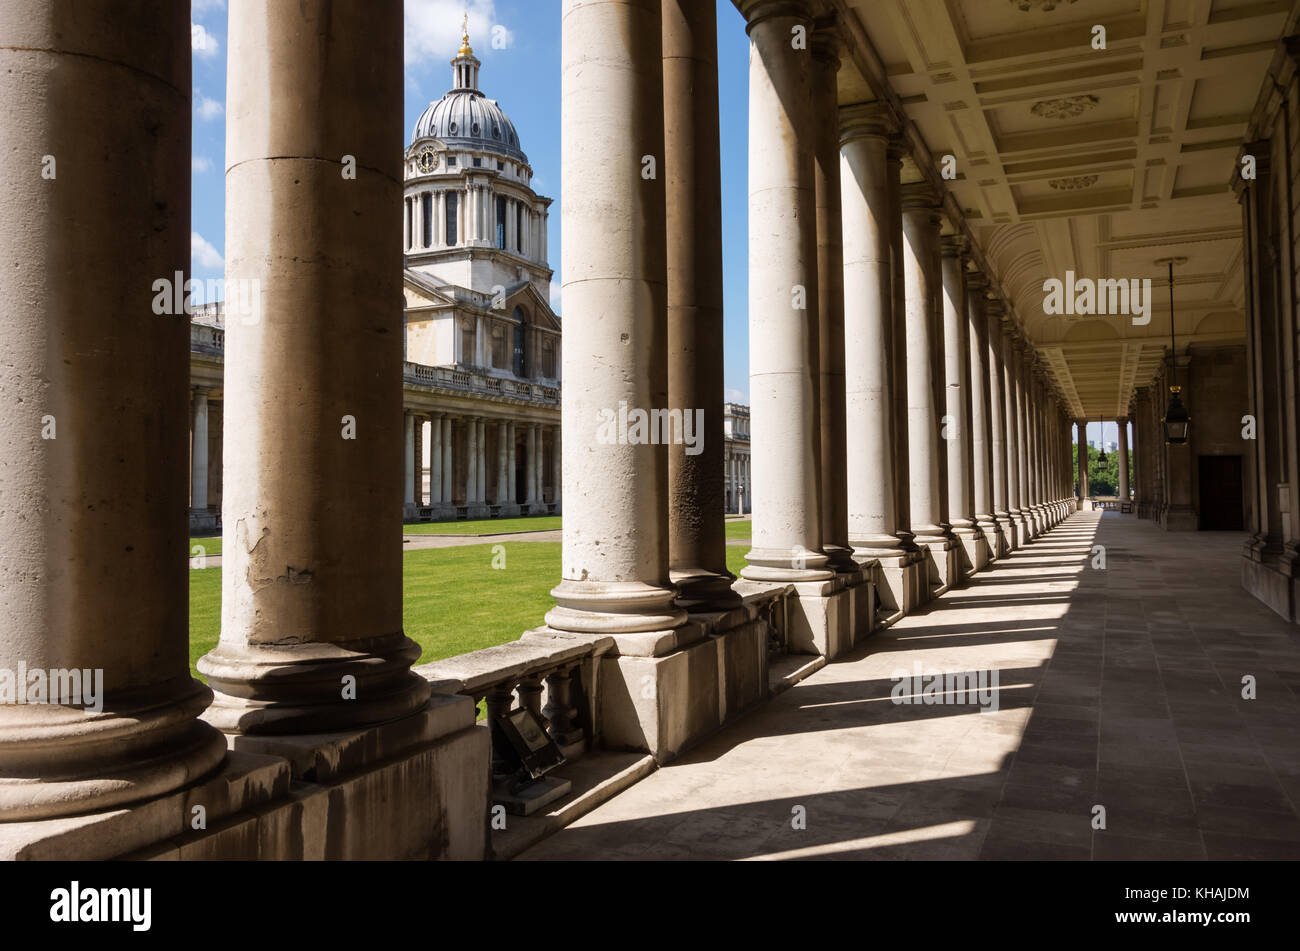 Le long de la colonnade de la cour de l'université, Université de Greenwich, London, England, UK Banque D'Images